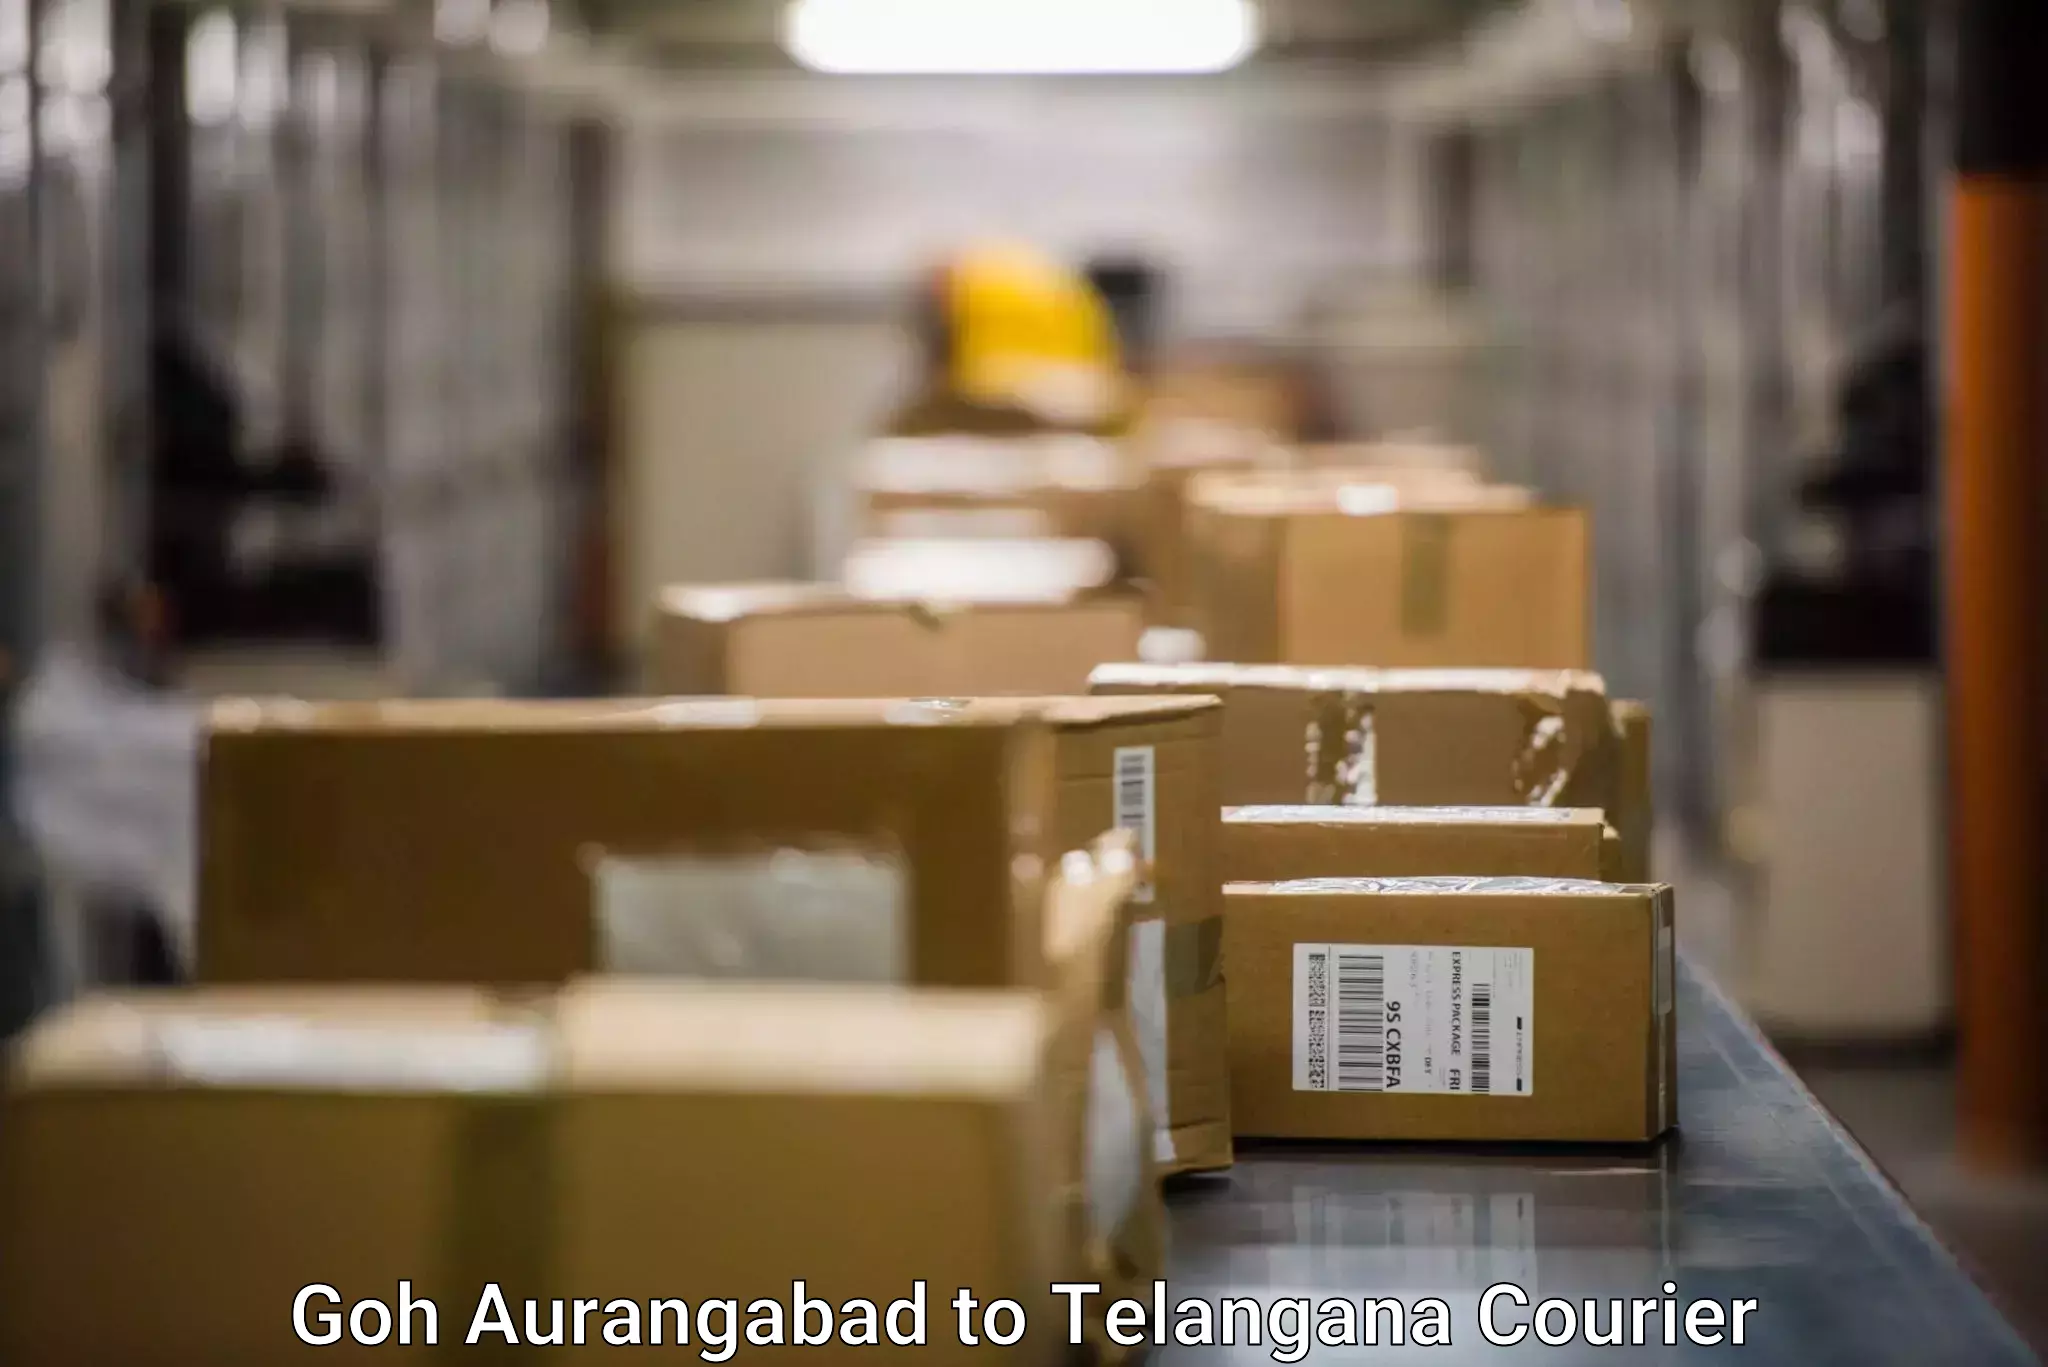 Quality courier services Goh Aurangabad to Kothagudem